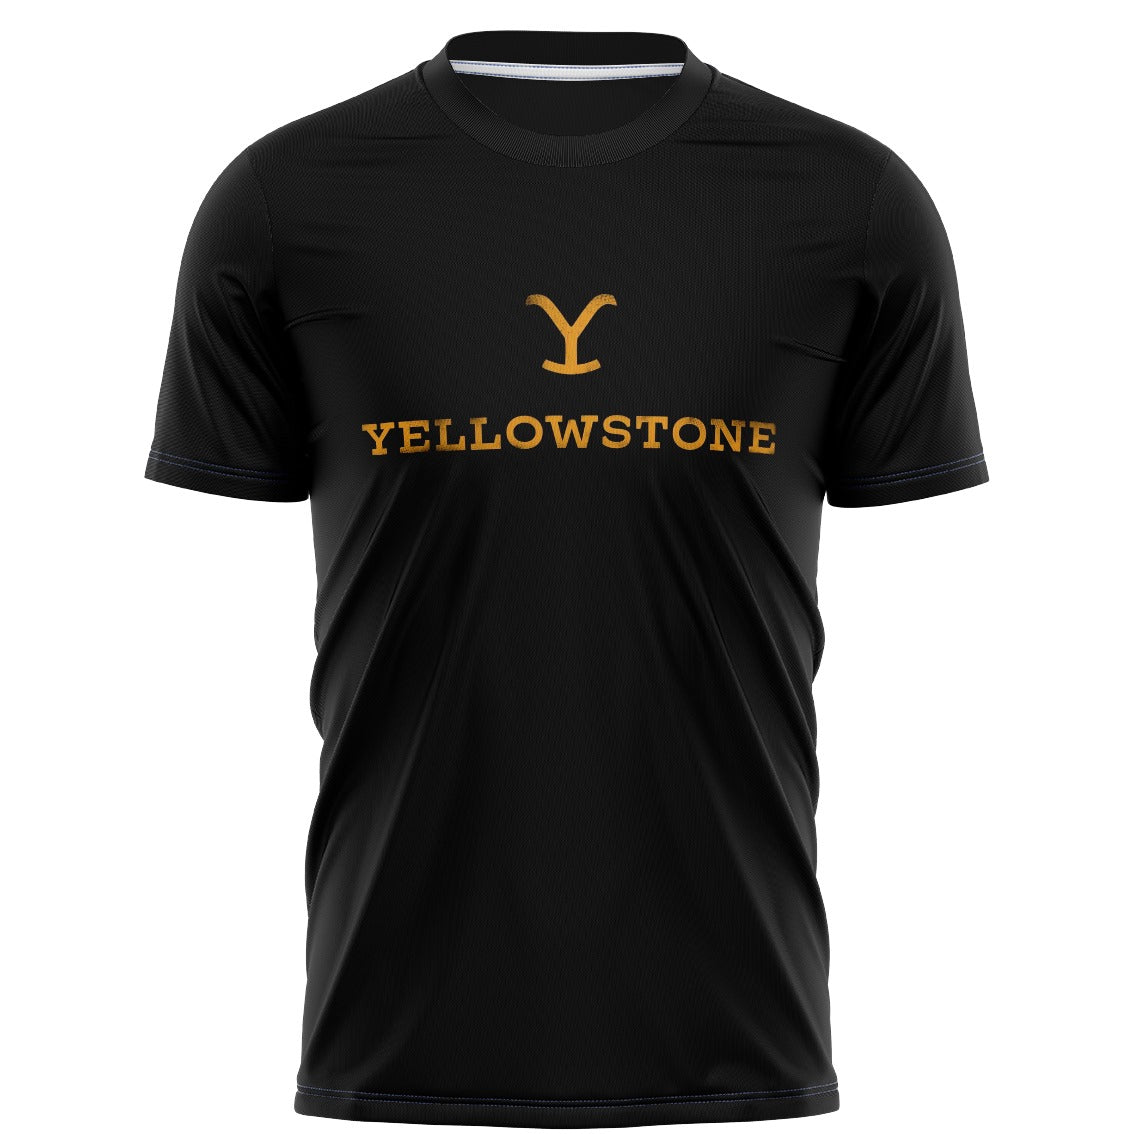 Playera Full Print Yellowstone mod 3